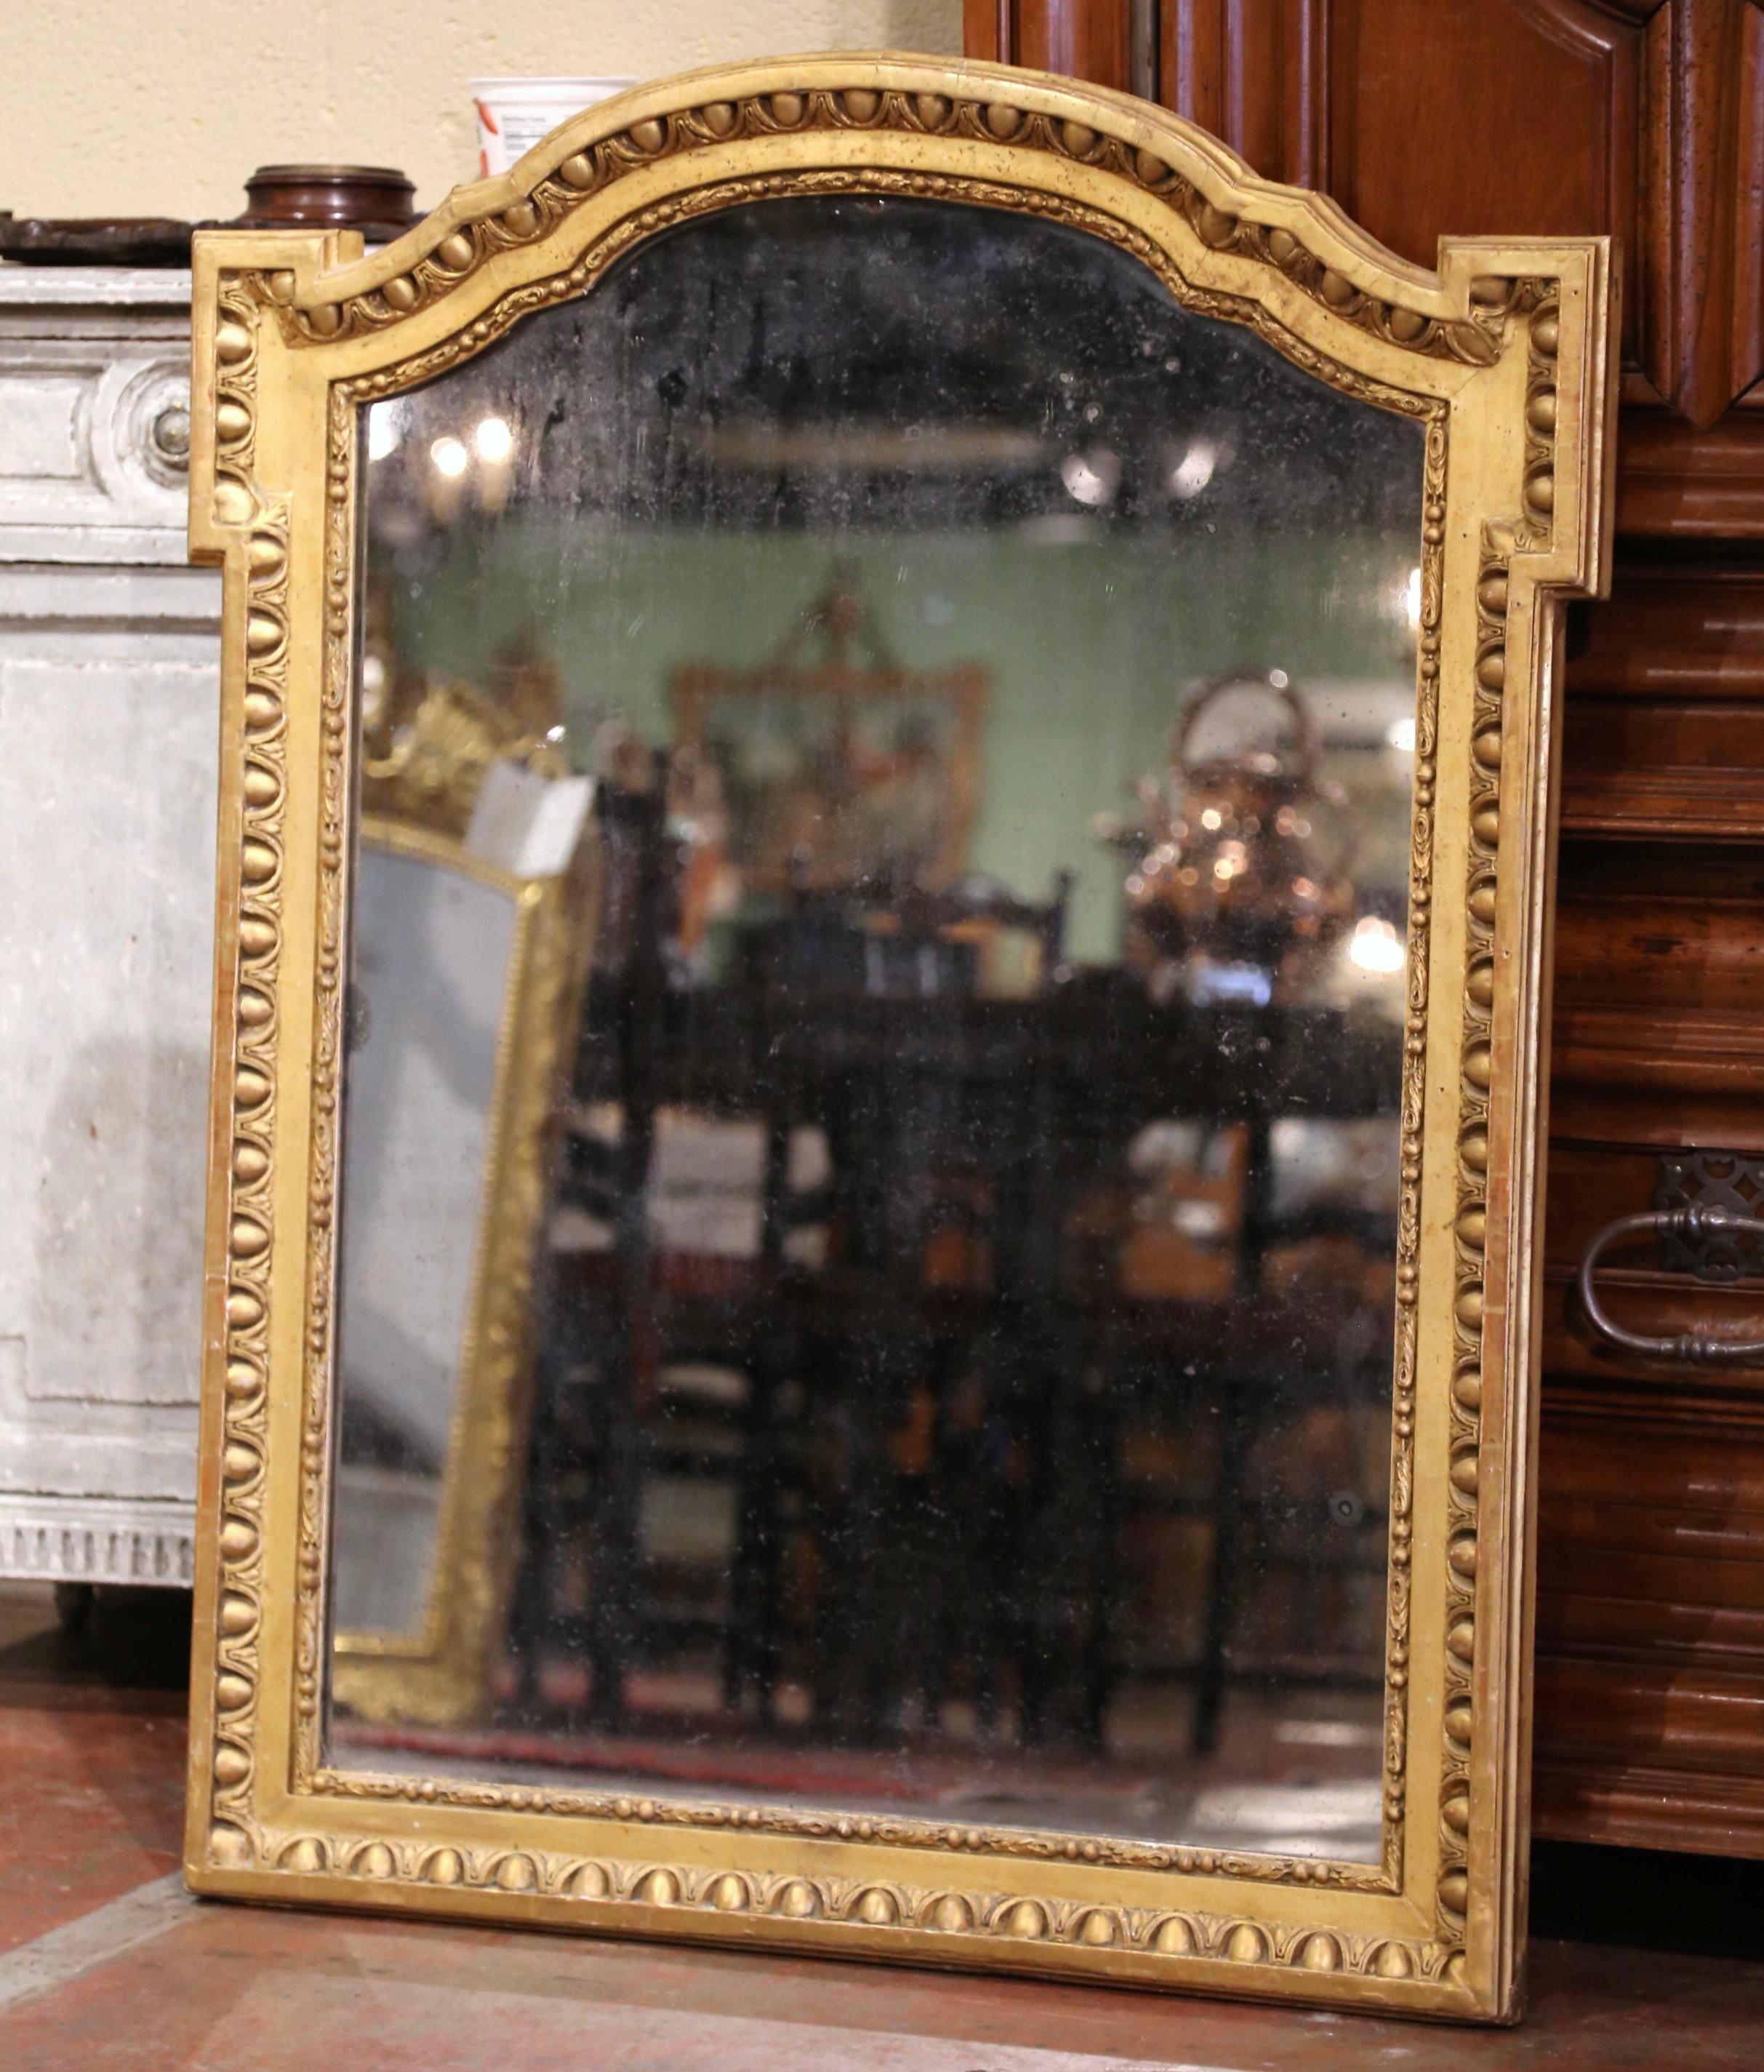 Dekorieren Sie einen Eingangsbereich oder ein Schlafzimmer mit diesem eleganten antiken Spiegel. Der um 1860 in der französischen Region Burgund gefertigte rechteckige Spiegel hat traditionelle, zeitlose Linien und eine elegante gewölbte Oberseite.